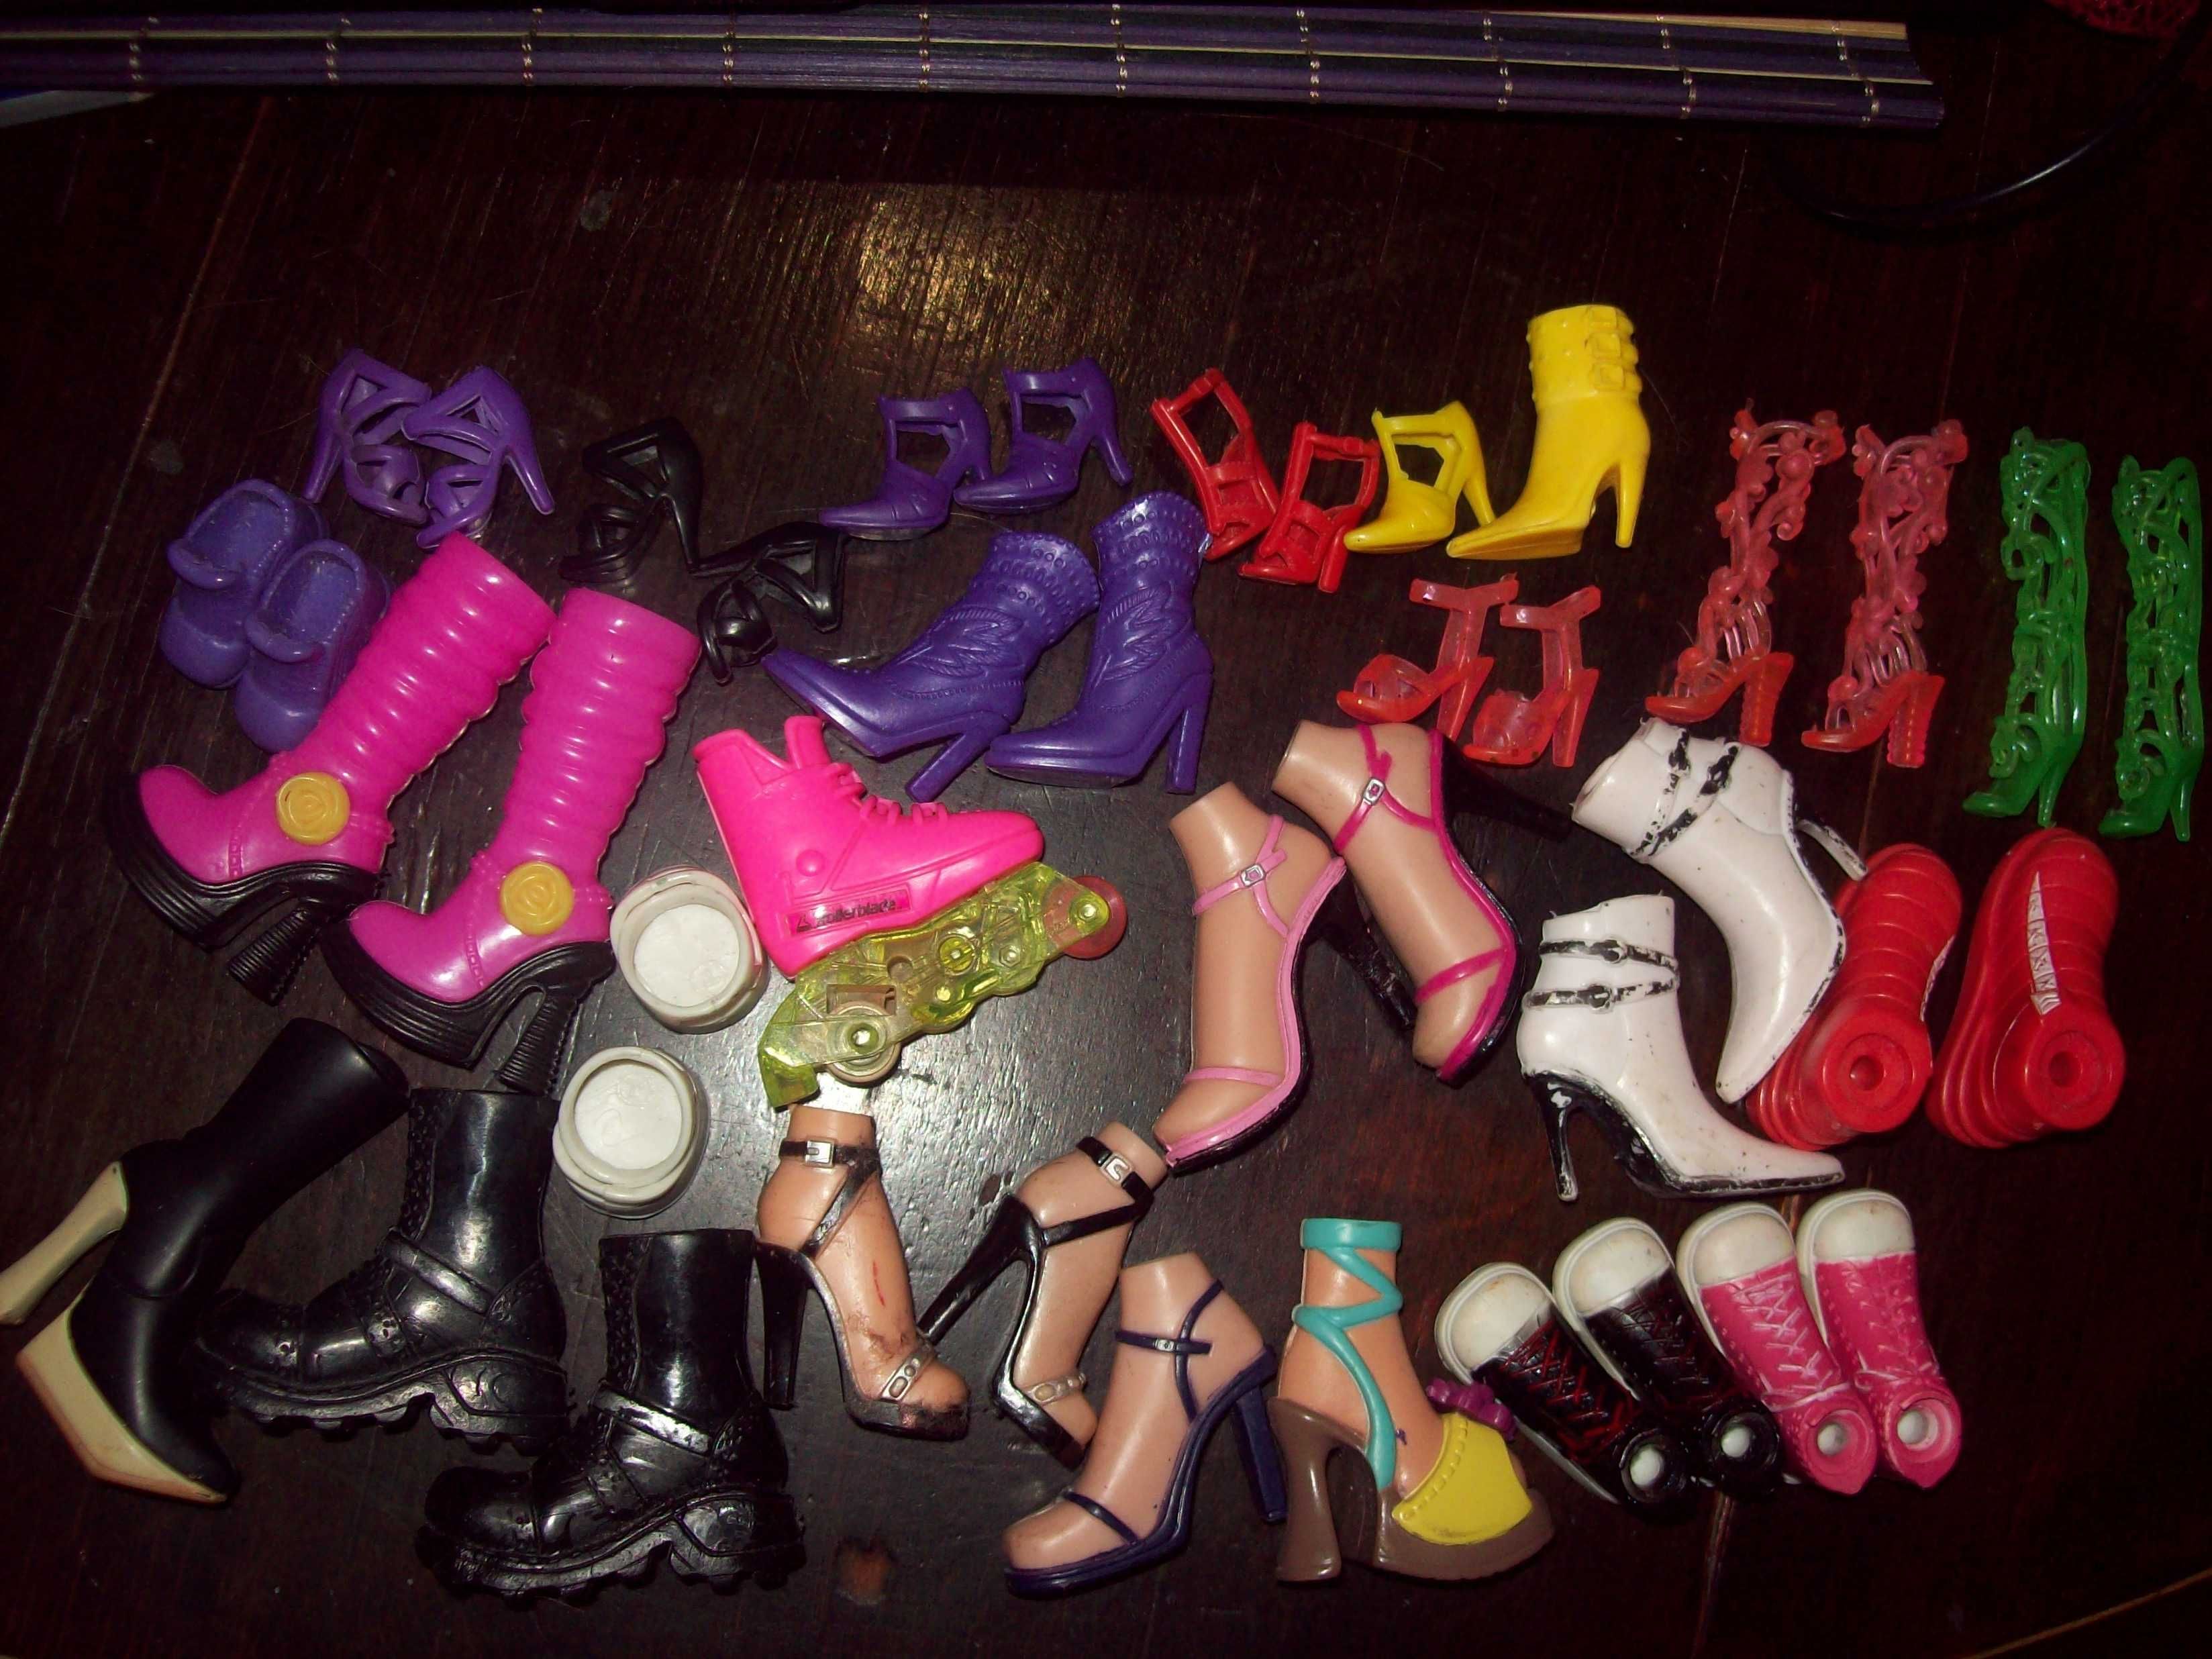 ЛОТ.Обувь для кукол Барби,Братц и др.Распаровка,потеряшки.